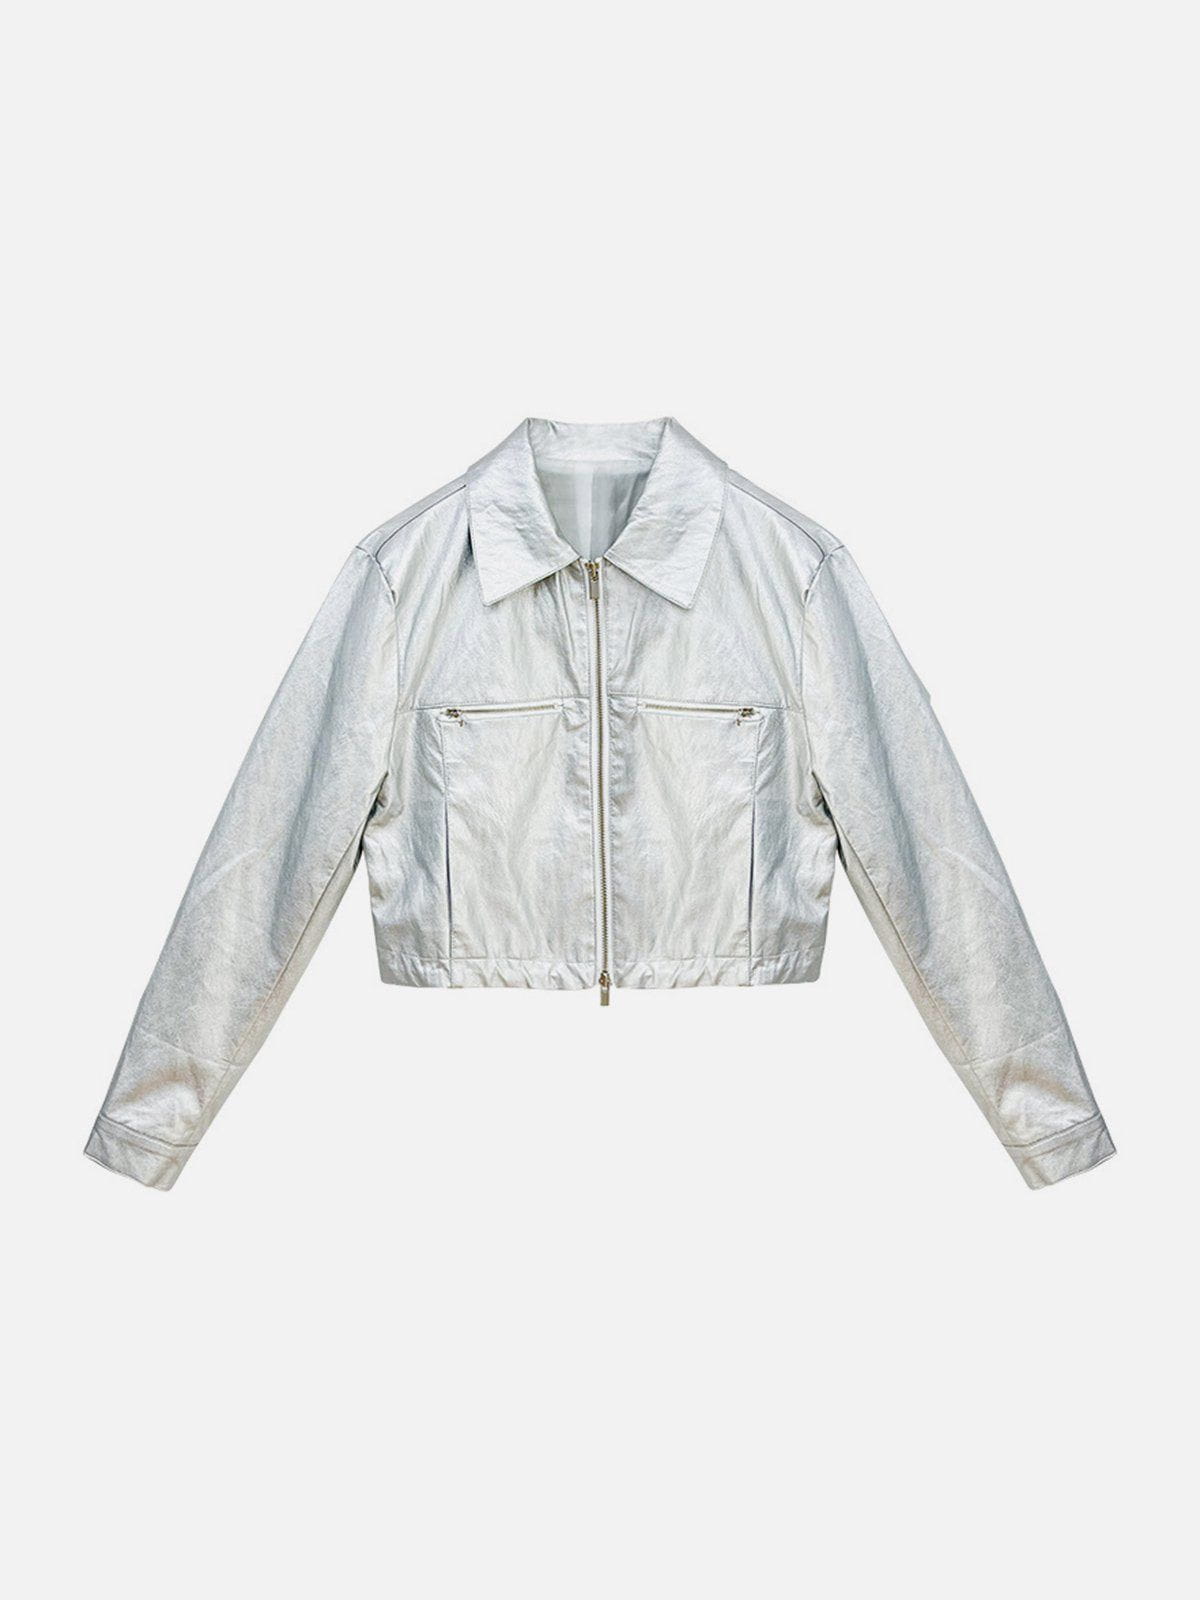 Eprezzy® - Shiny Silver Cropped Jacket Streetwear Fashion - eprezzy.com